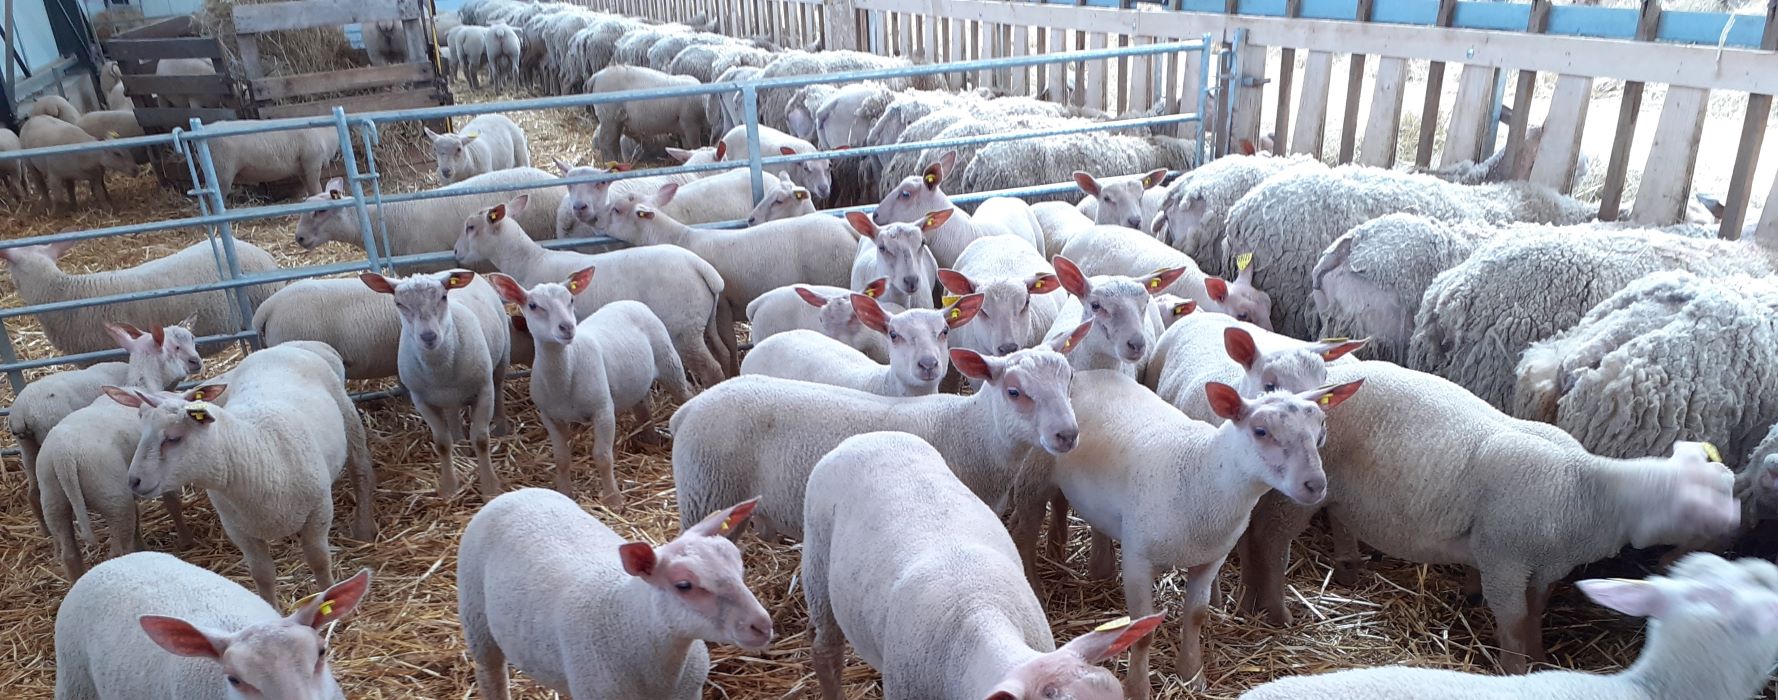 Un programme de recherche pour revaloriser 2 races ovines françaises